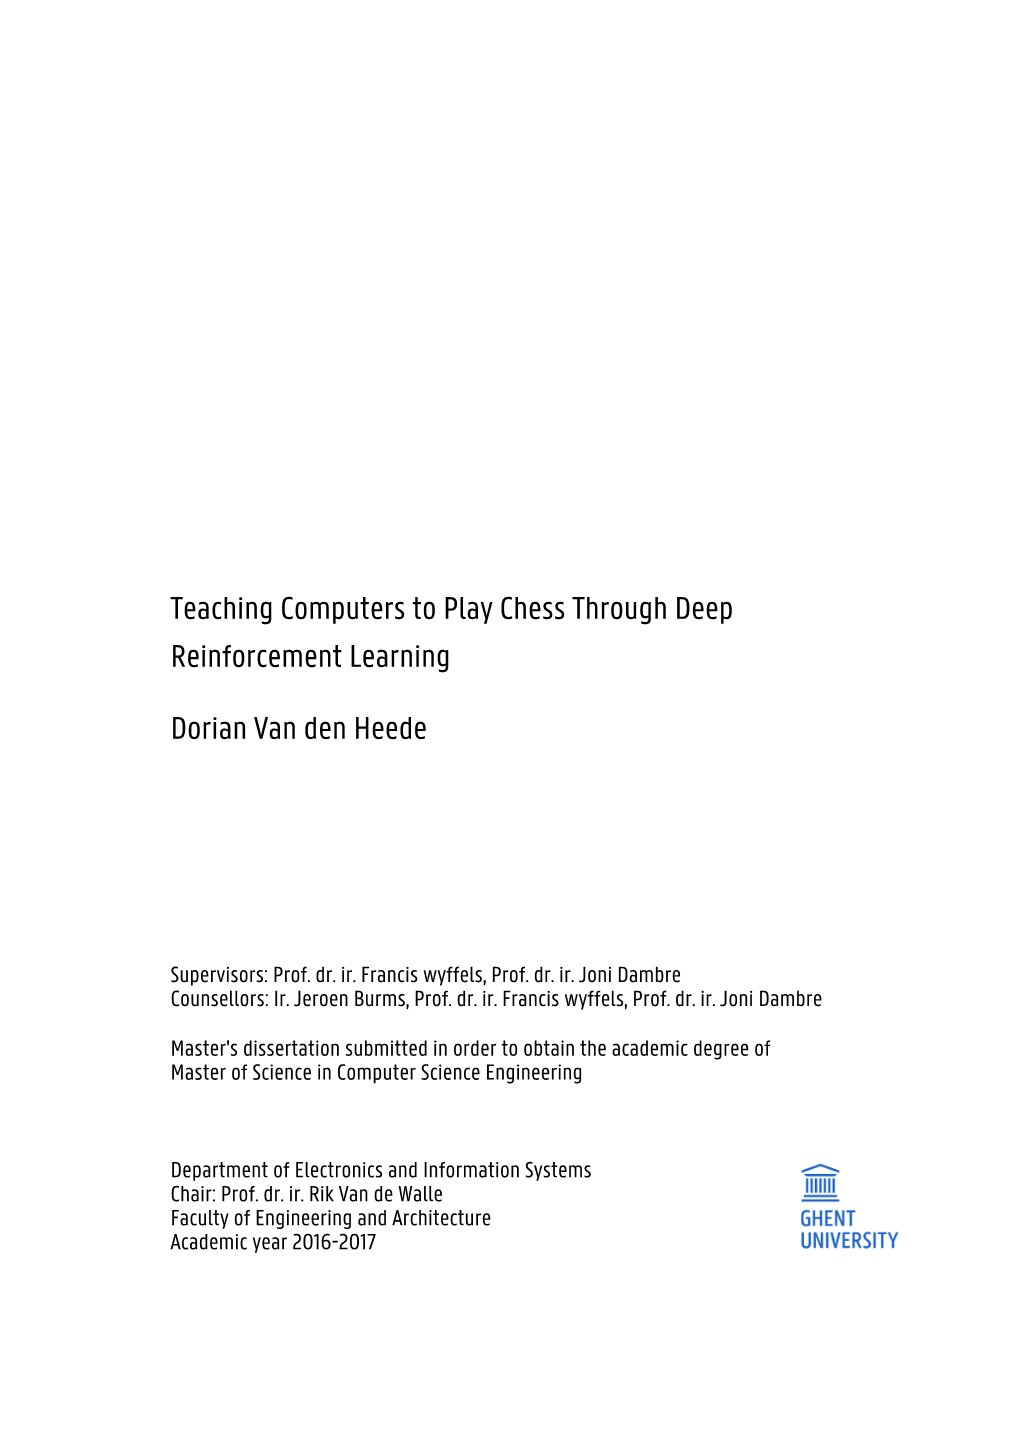 Dorian Van Den Heede Reinforcement Learning Teaching Computers To